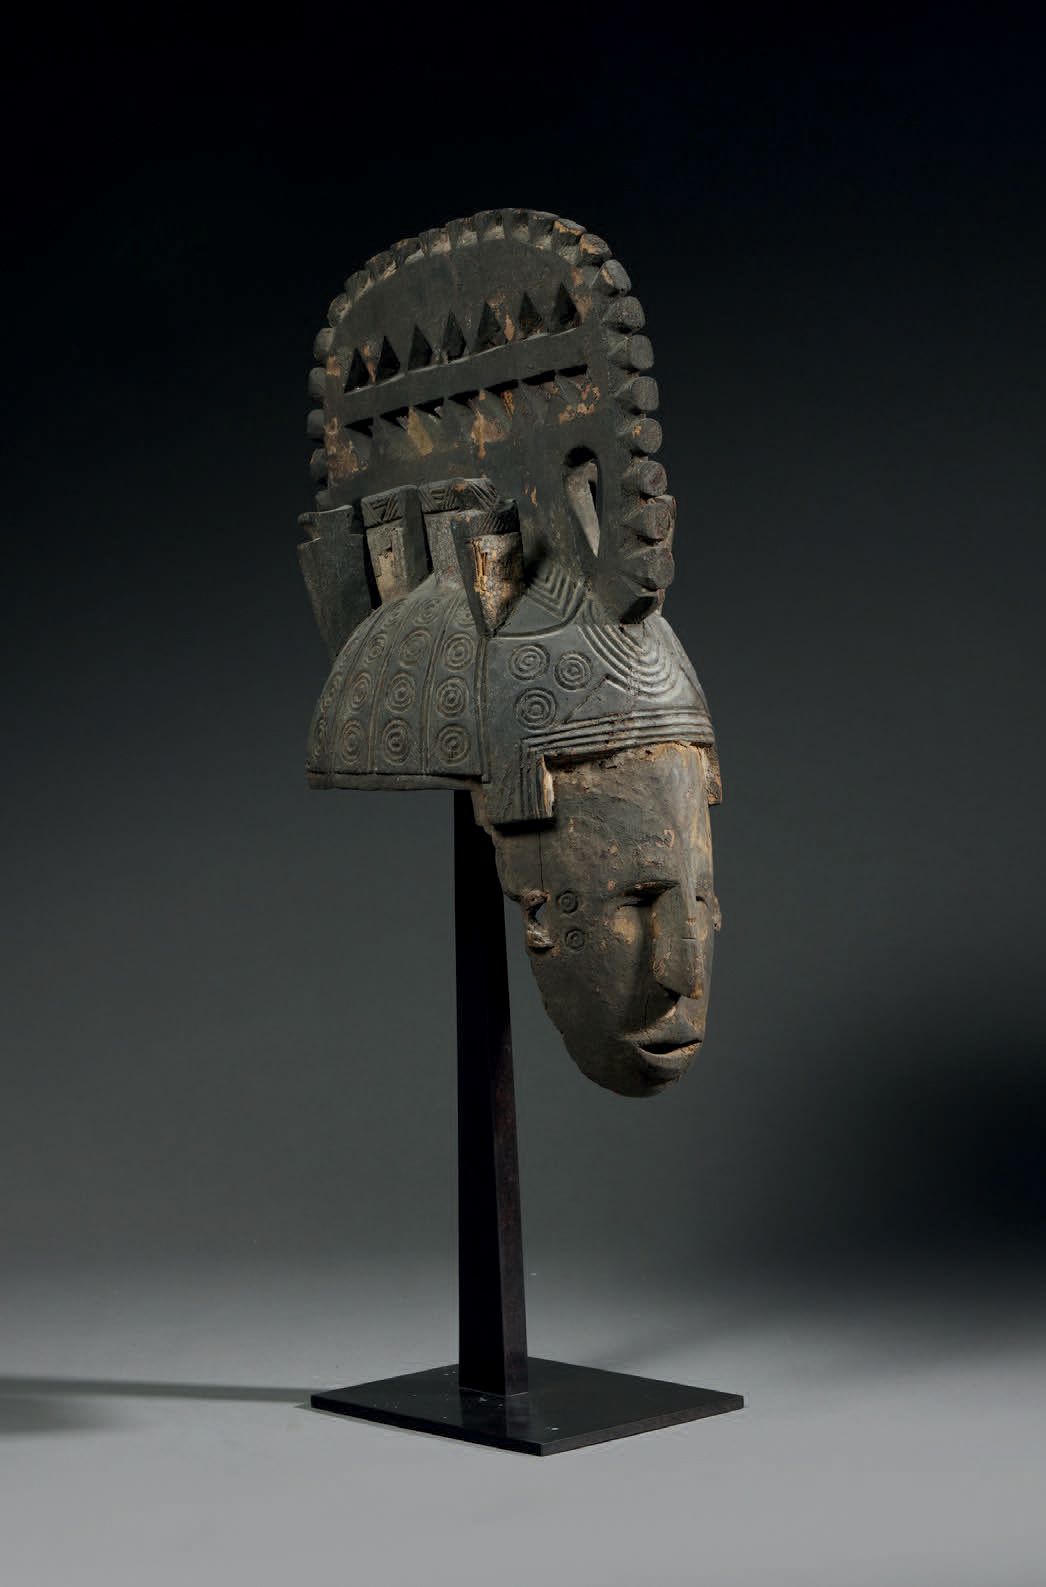 Null Igbo Mmwo Maske
Nigeria
Holz
H. 45 cm
Palmenmaske, die ein menschliches Ges&hellip;